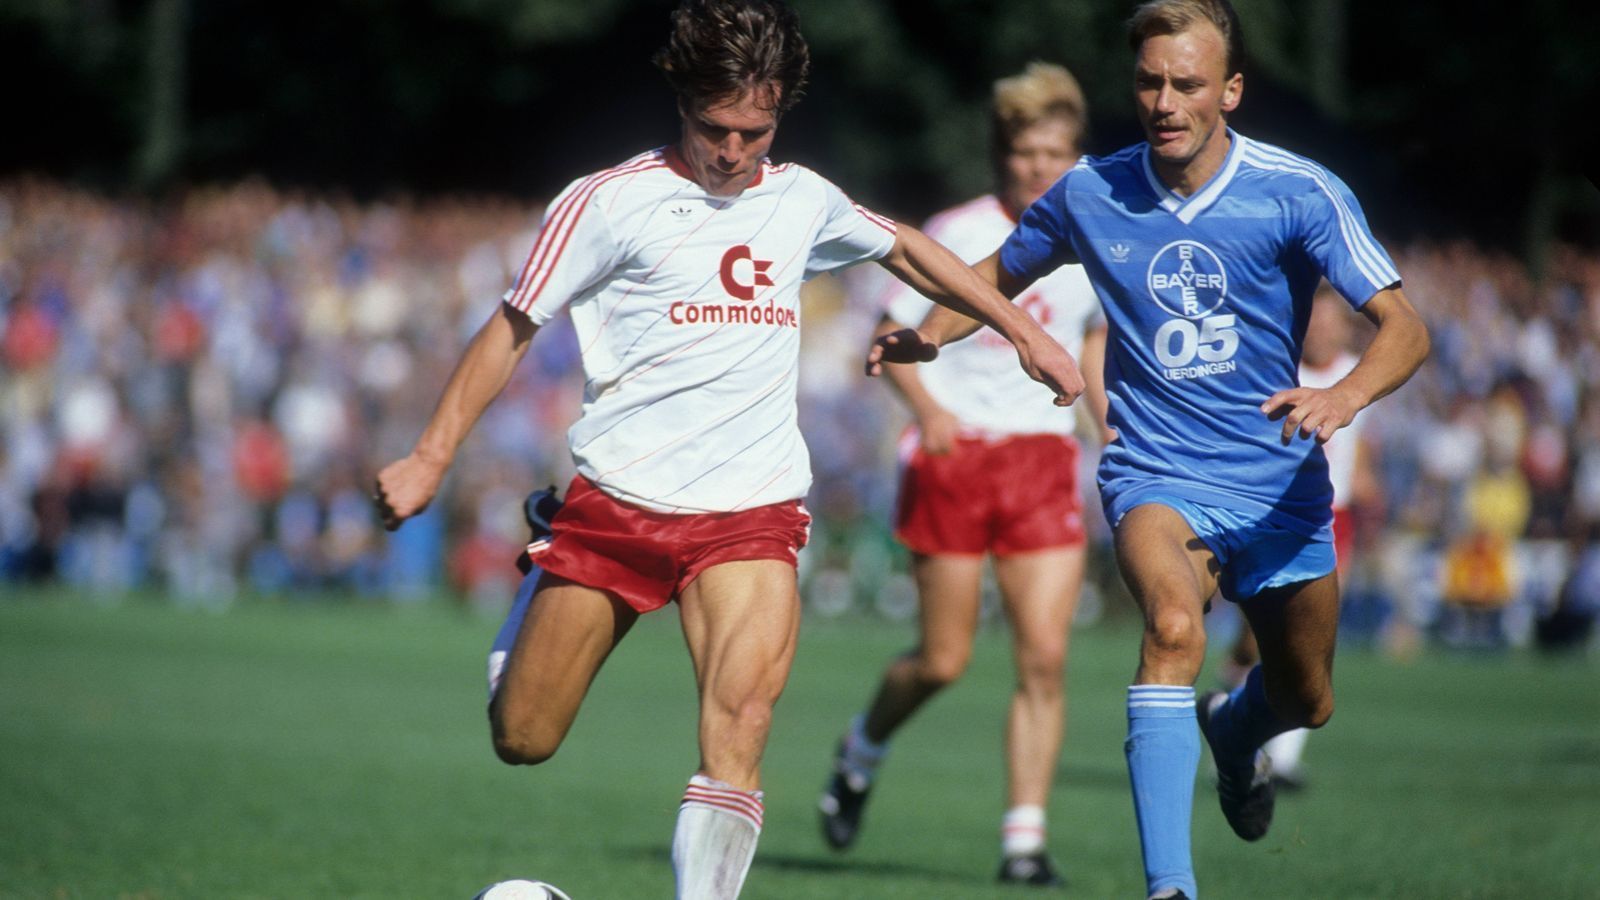 
                <strong>KFC Uerdingen – Bis 1996 in der Bundesliga</strong><br>
                In den 1980er und 1990er Jahren war der Verein Dauermitglied in der Bundesliga, damals noch unter dem Namen Bayer Uerdingen. Nach der Trennung von der Bayer AG geriet der Verein jedoch in finanzielle Schwierigkeiten, die den KFC Uerdingen bis in die 6. Liga führte.  
              